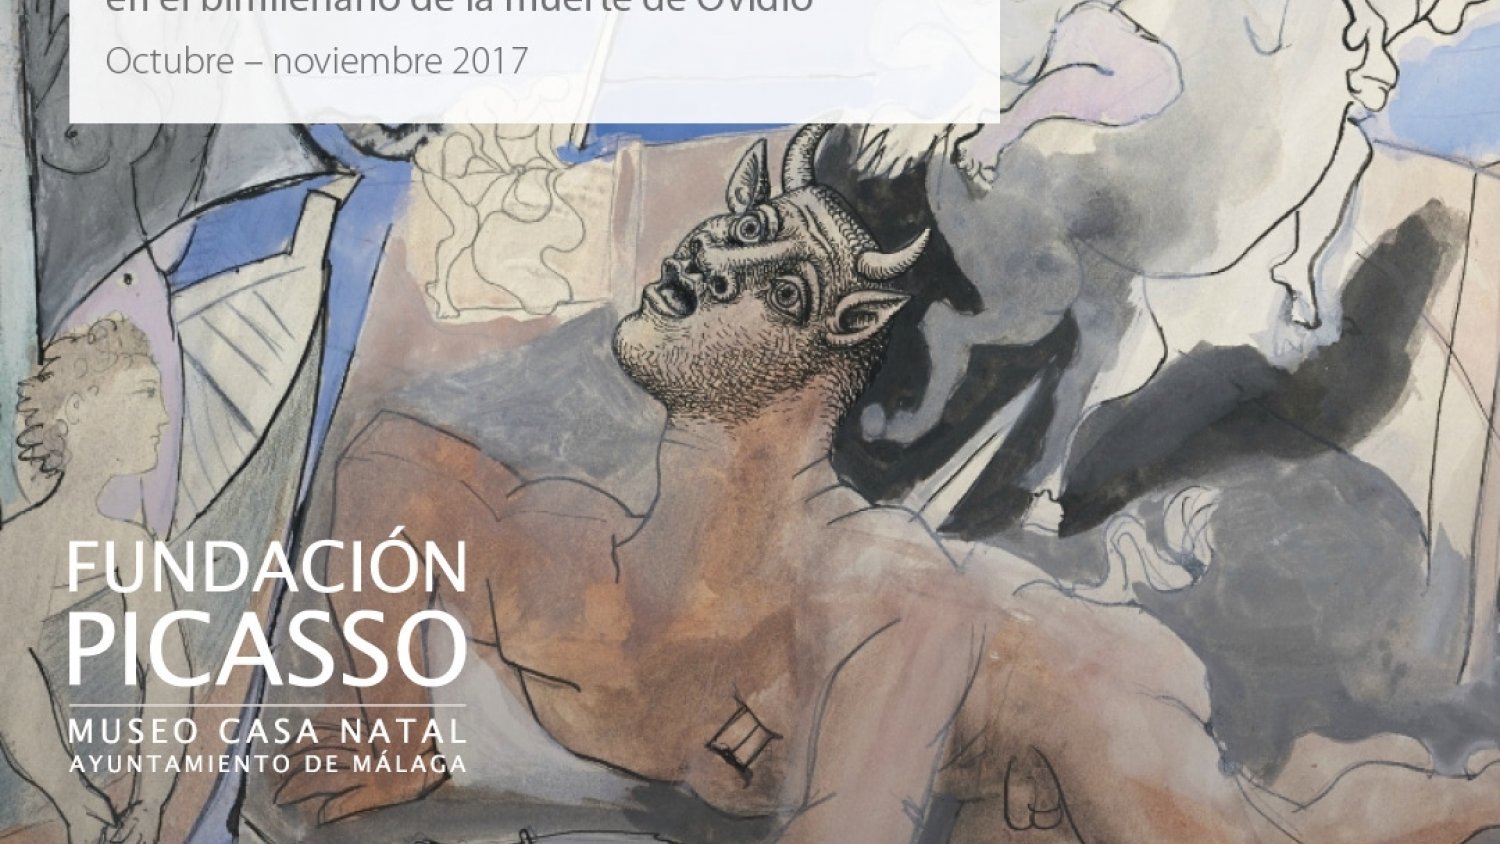 La mitología a través de la figura de Ovidio centrará el IV taller experimental de investigación sobre Picasso